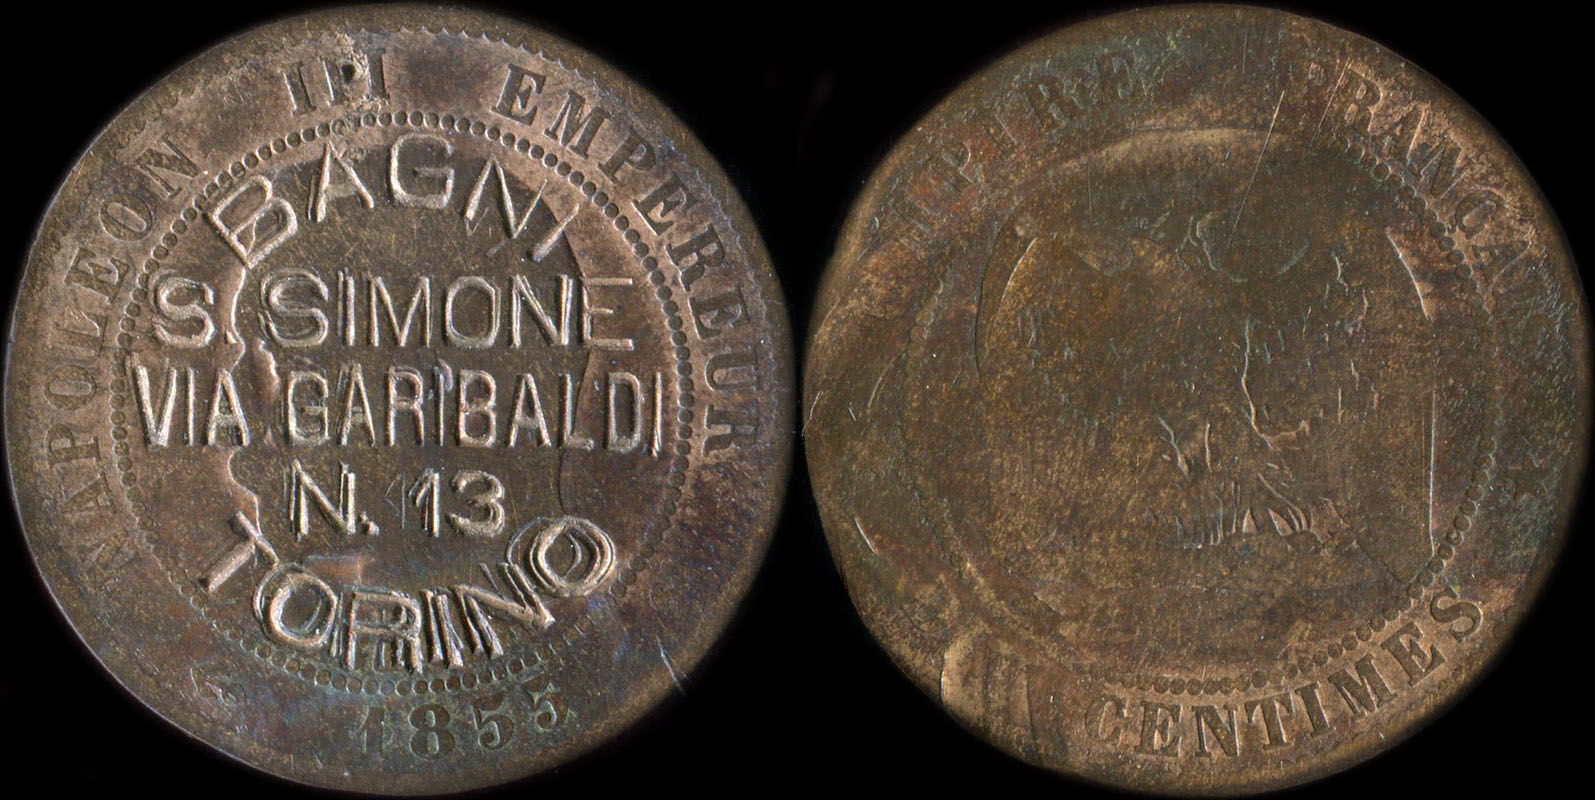 10 centimes Napolon III 1855 tte nue avec surfrappe Bagni S.Simone via Garibaldi N.13 Torino